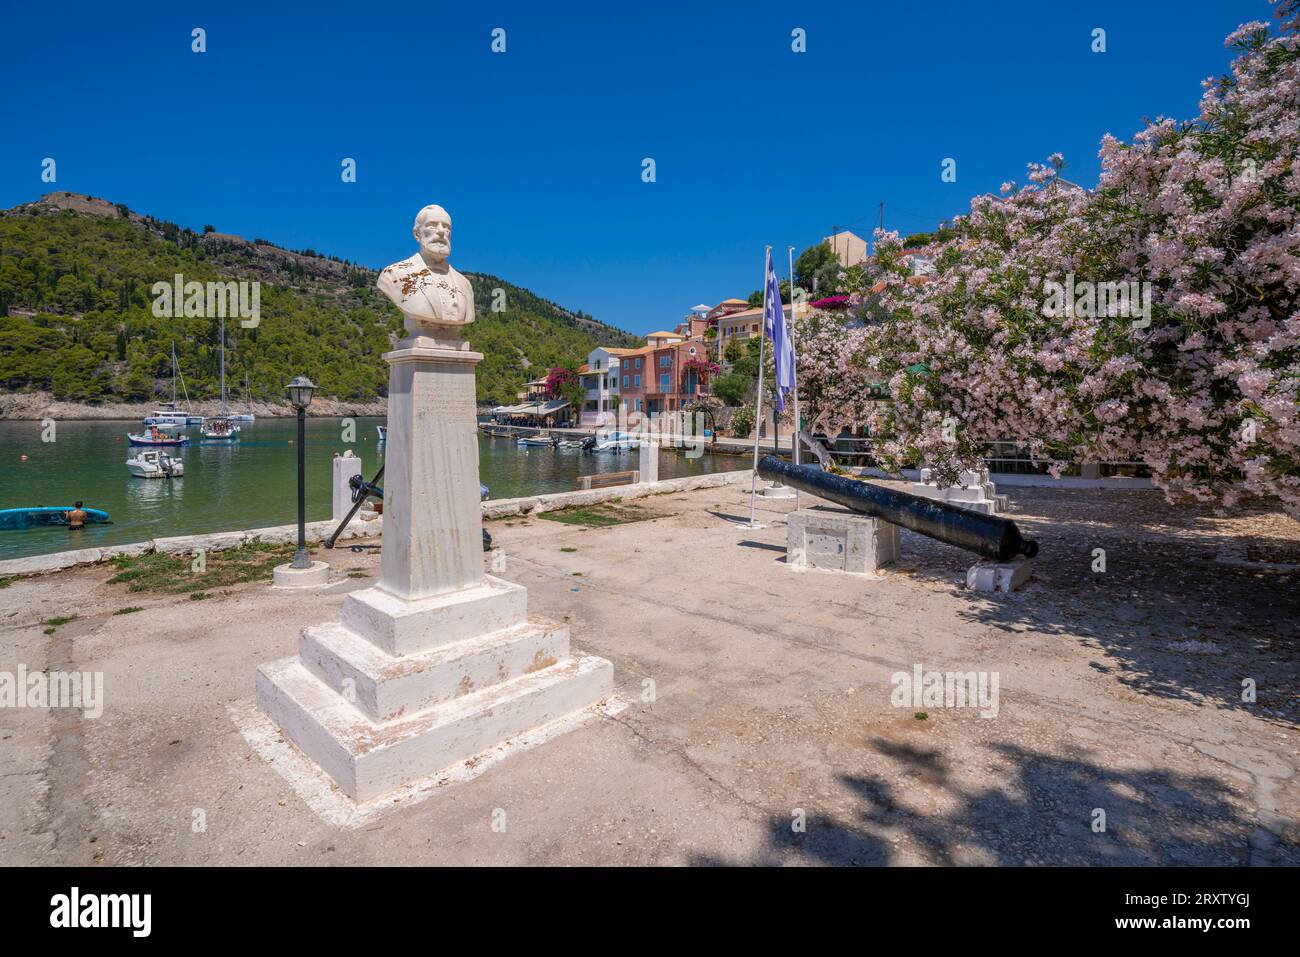 Vue de la statue et des maisons colorées à Assos, Assos, Céphalonie, îles Ioniennes, îles grecques, Grèce, Europe Banque D'Images